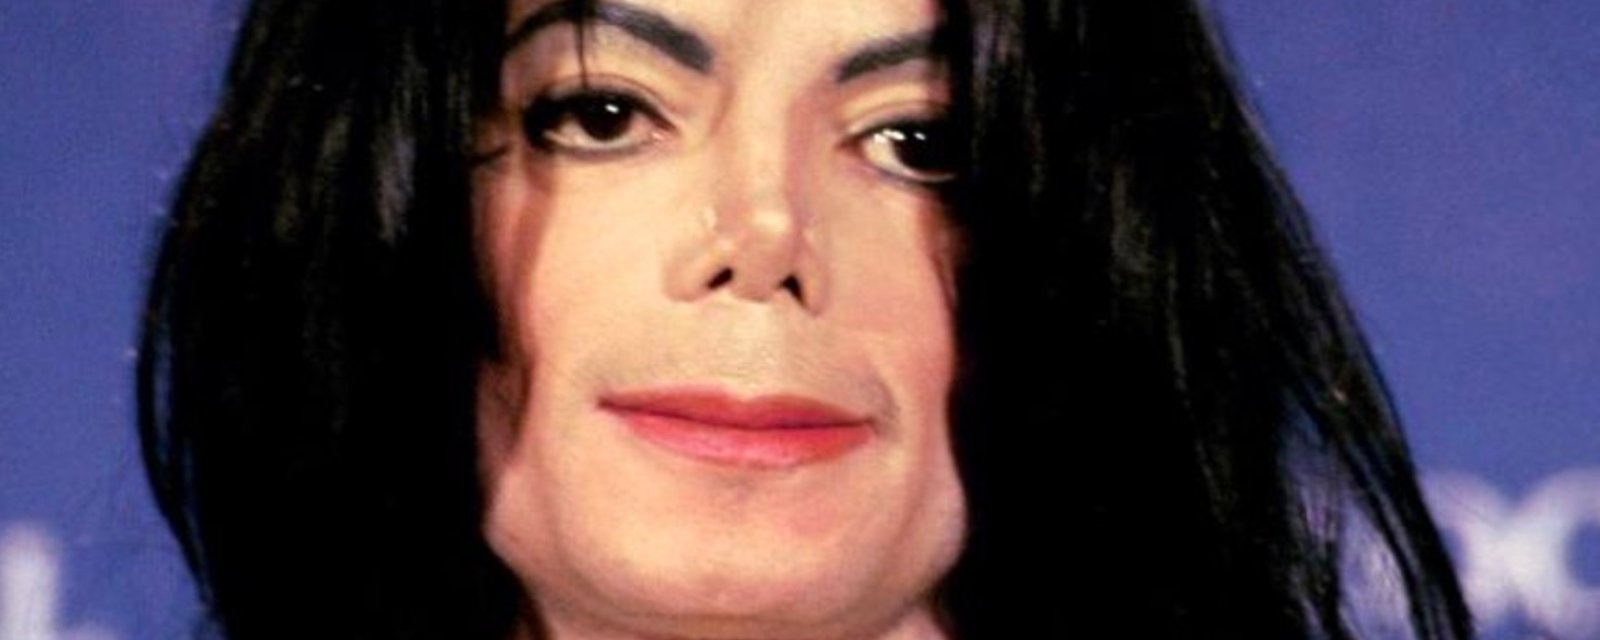 Le sosie de Michael Jackson sème la folie sur le web